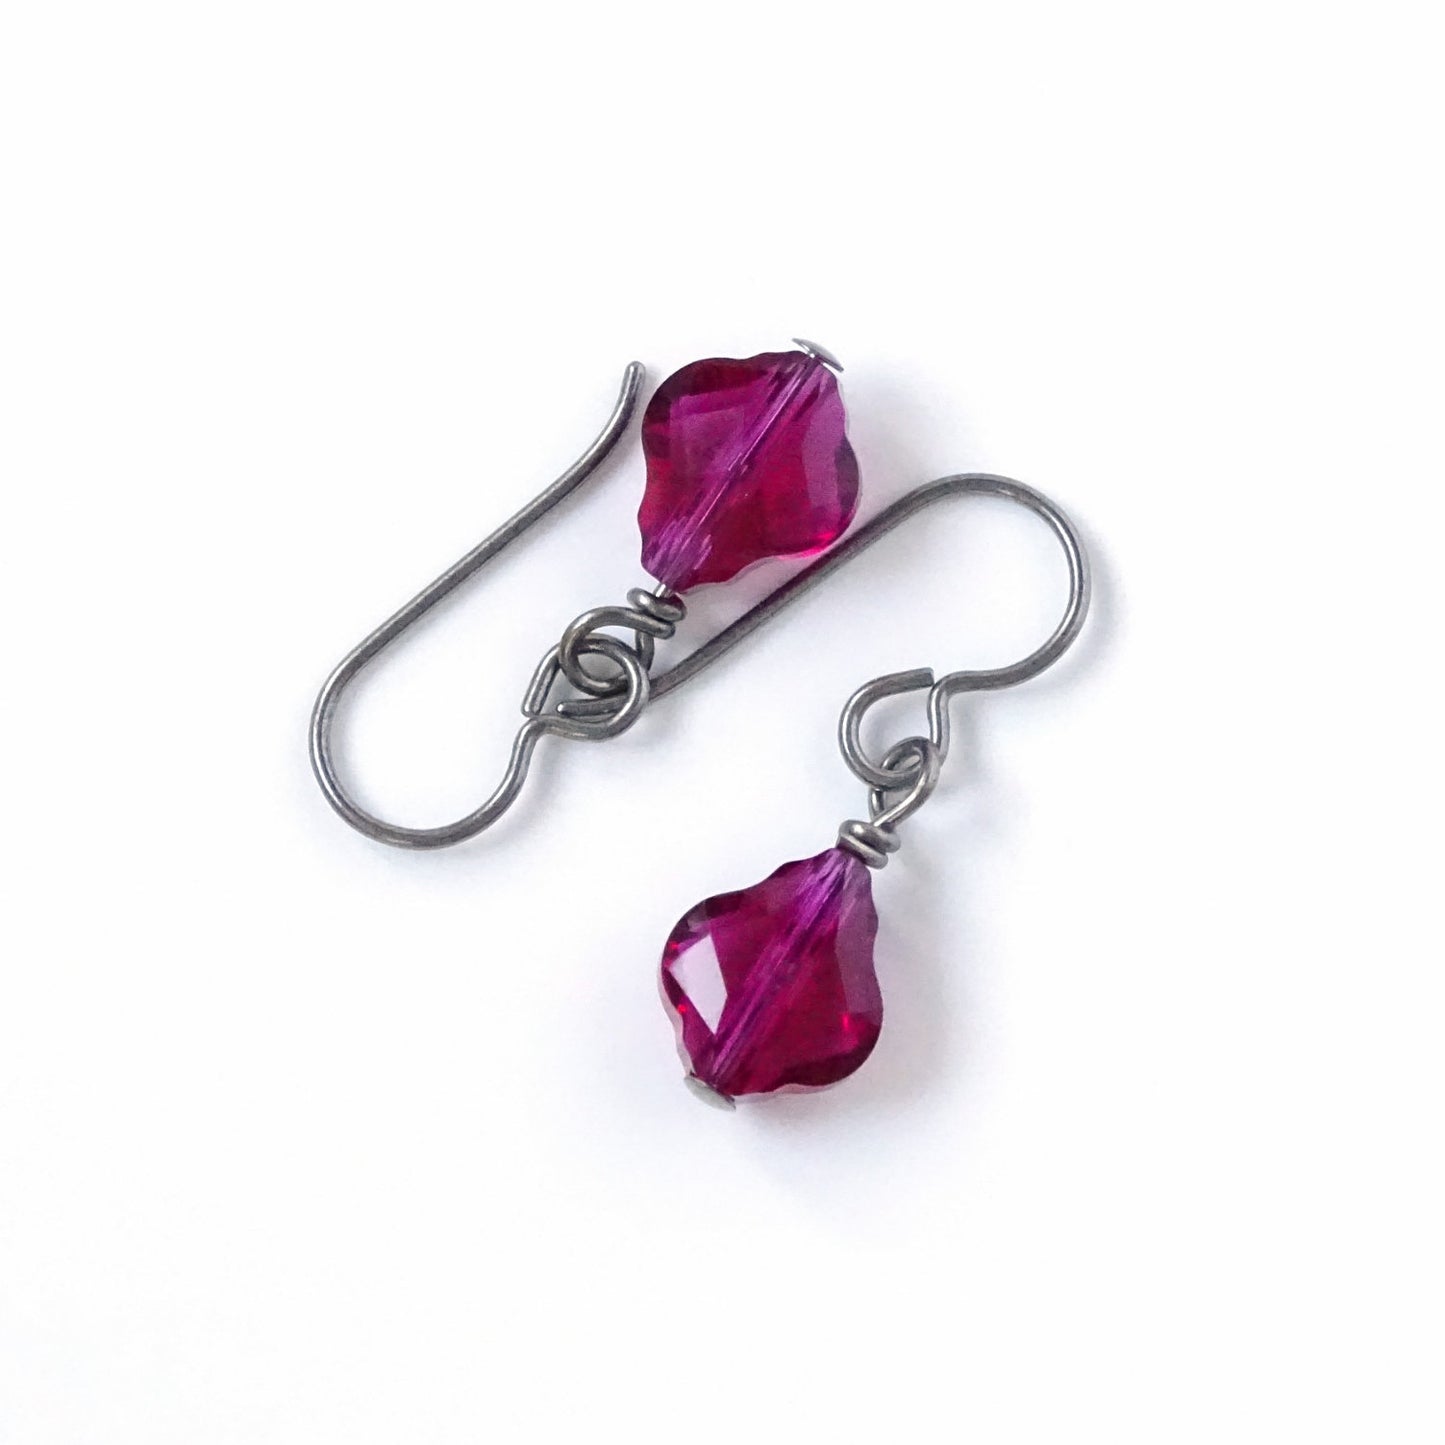 Ruby Baroque Crystal Titanium Earrings, Ruby Red Pink Swarovski Crystal, Hypoallergenic Nickel Free Niobium Earrings for Sensitive Ears